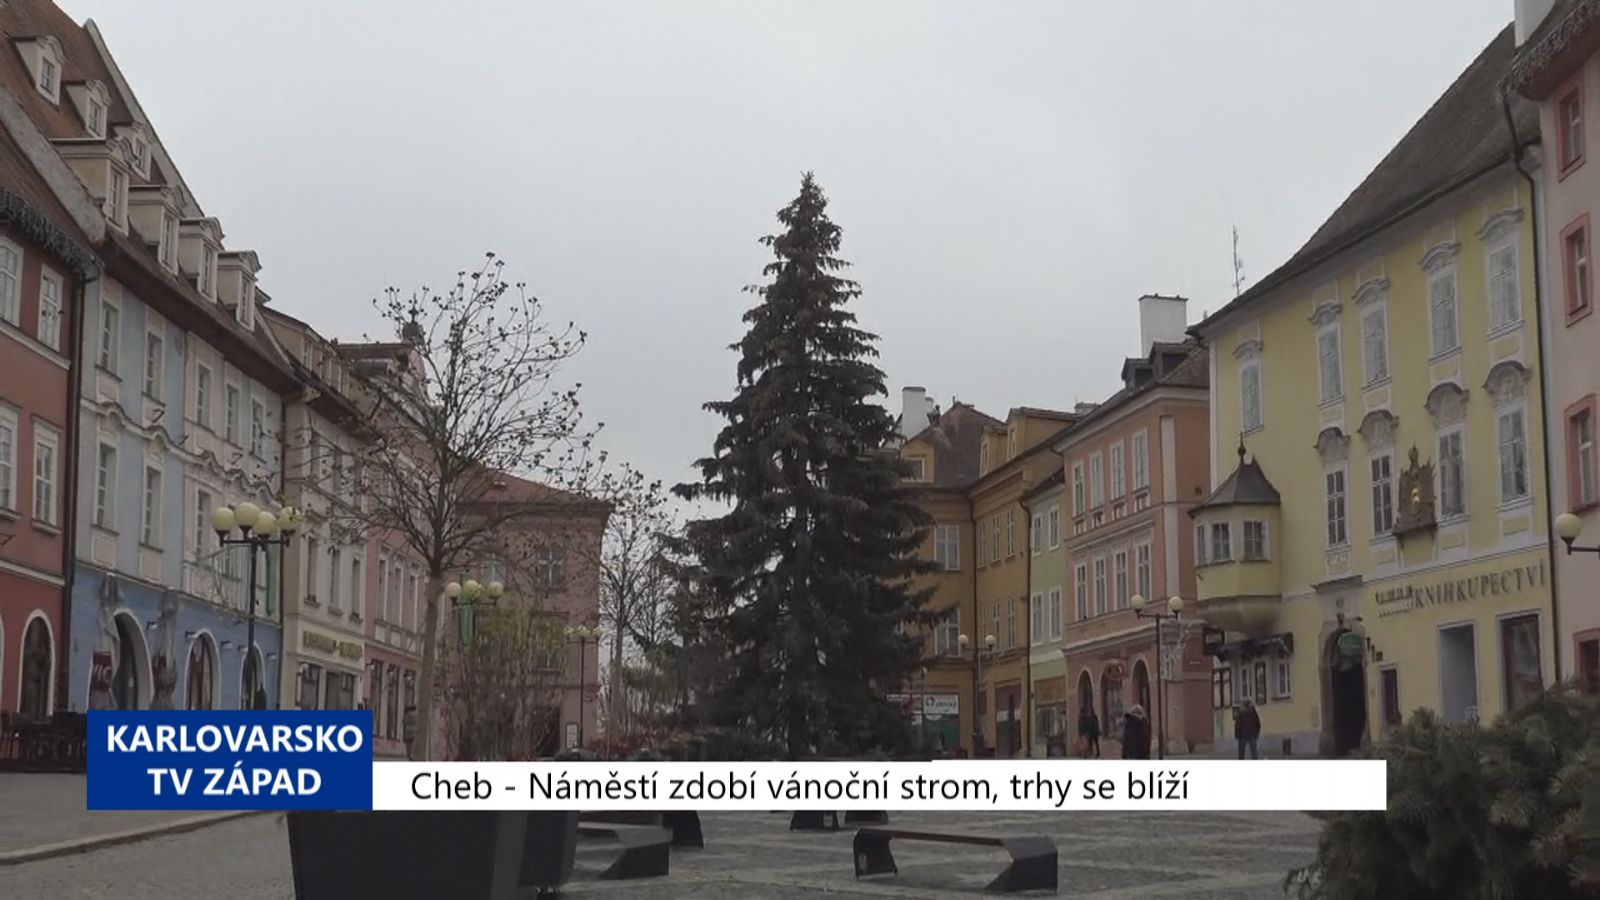 Cheb: Náměstí zdobí vánoční strom, trhy se blíží (TV Západ)